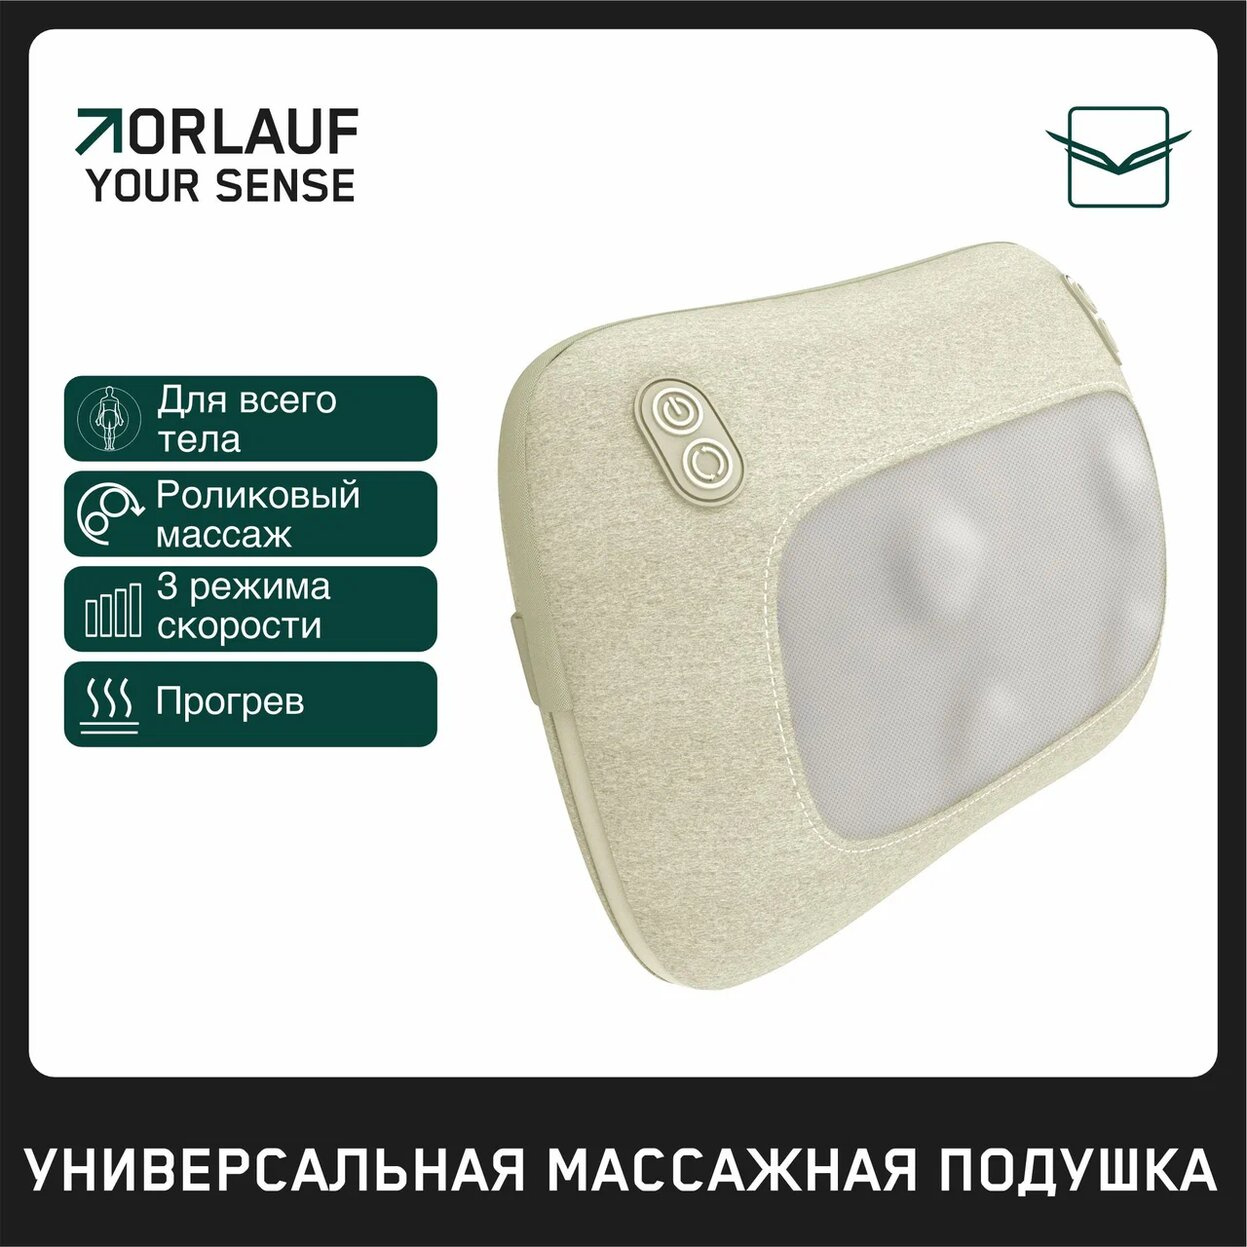 Your Sense в Тольятти по цене 9400 ₽ в категории массажеры Orlauf